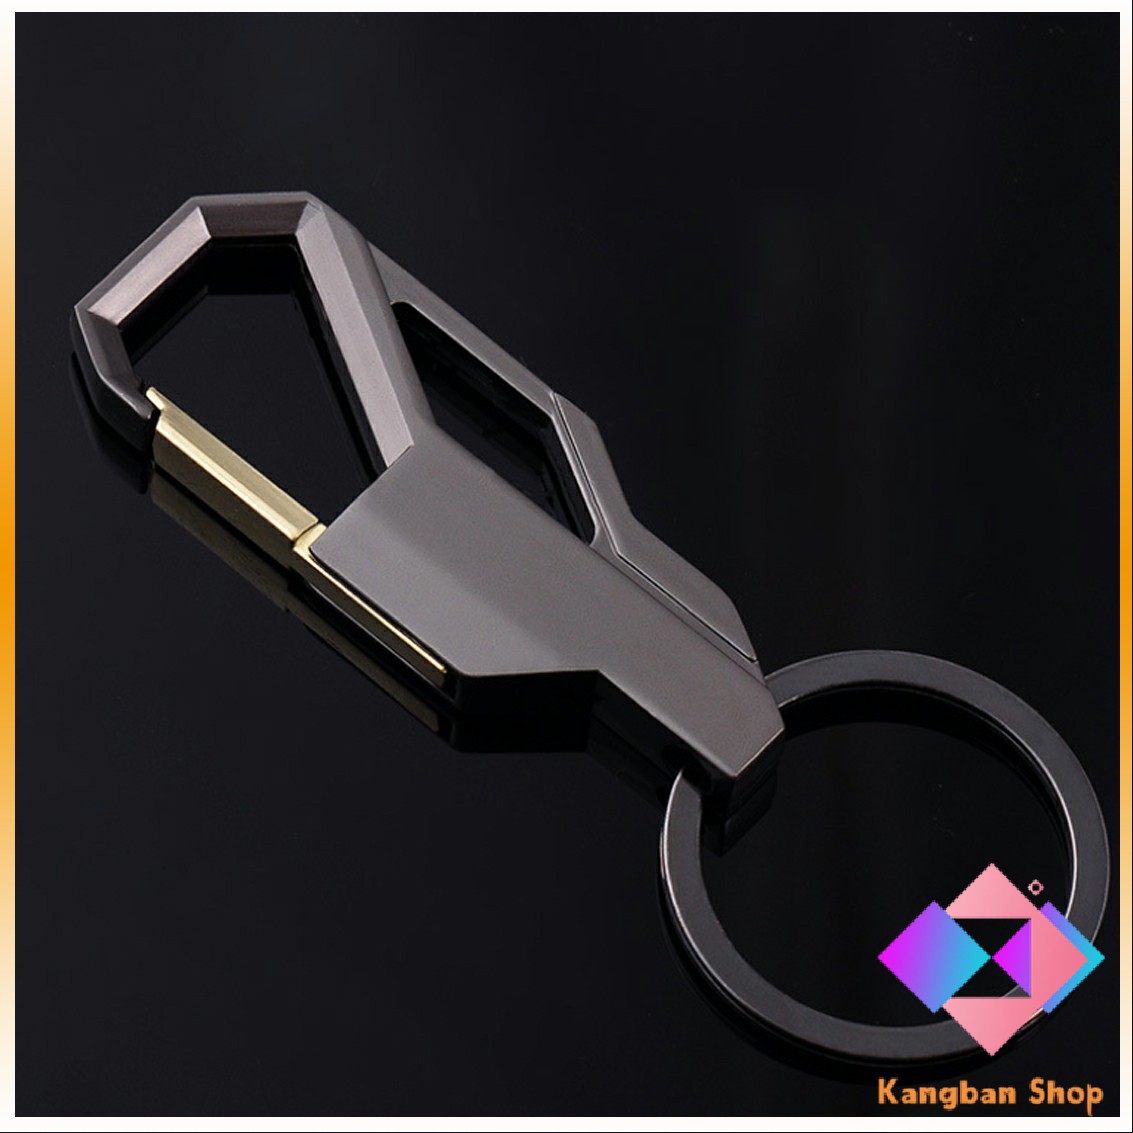 คำอธิบายเพิ่มเติมเกี่ยวกับ KANGBAN ที่ล๊อคพวงกุญแจโลหะ สำหรับห้อยงกุญแจ พวงกุญแจราคาถูก พวงกุญแจรถ 1 ชิ้น Keychain